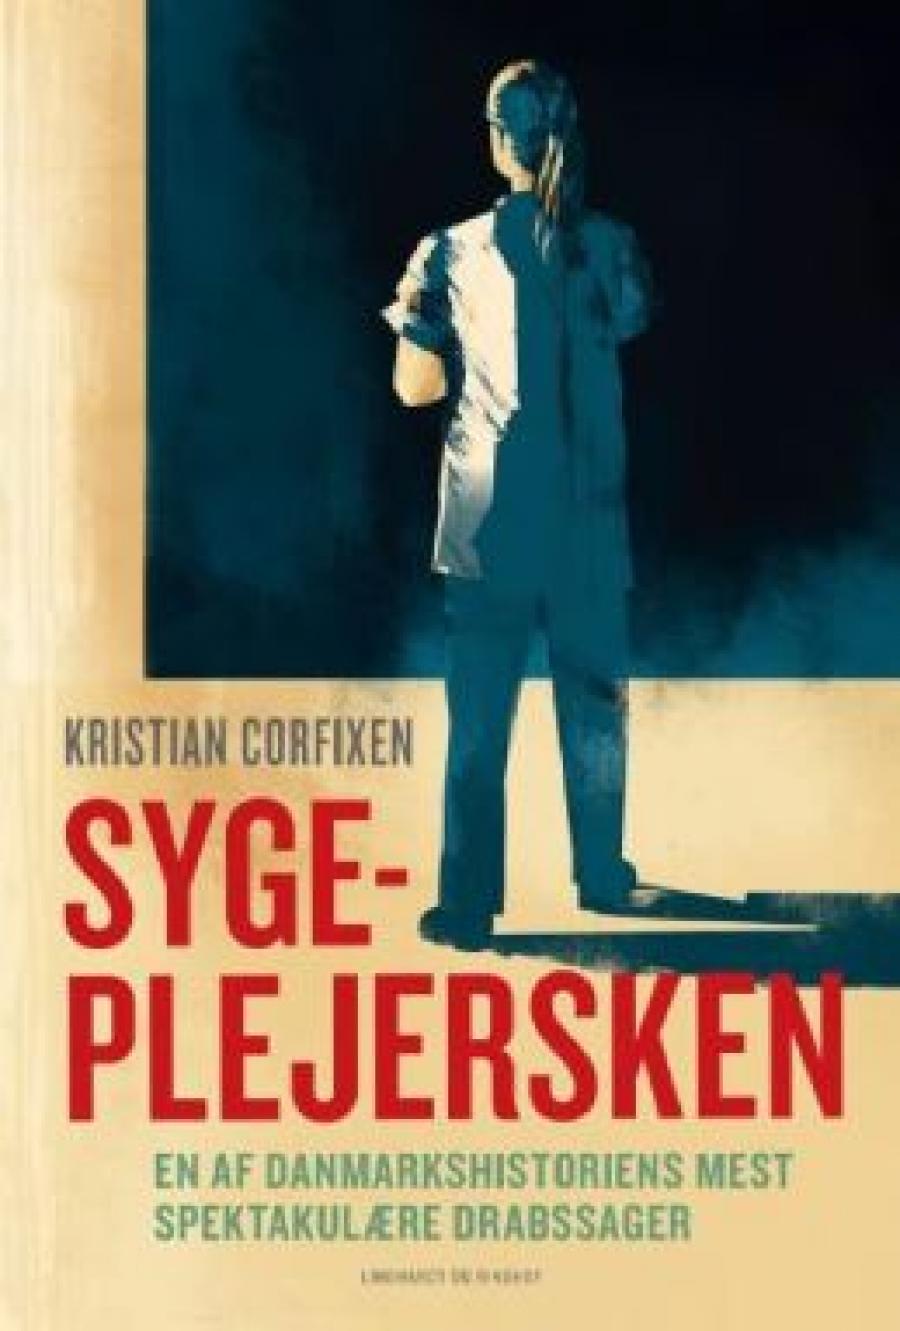 "Sygeplejersken", Kristian Corfixen